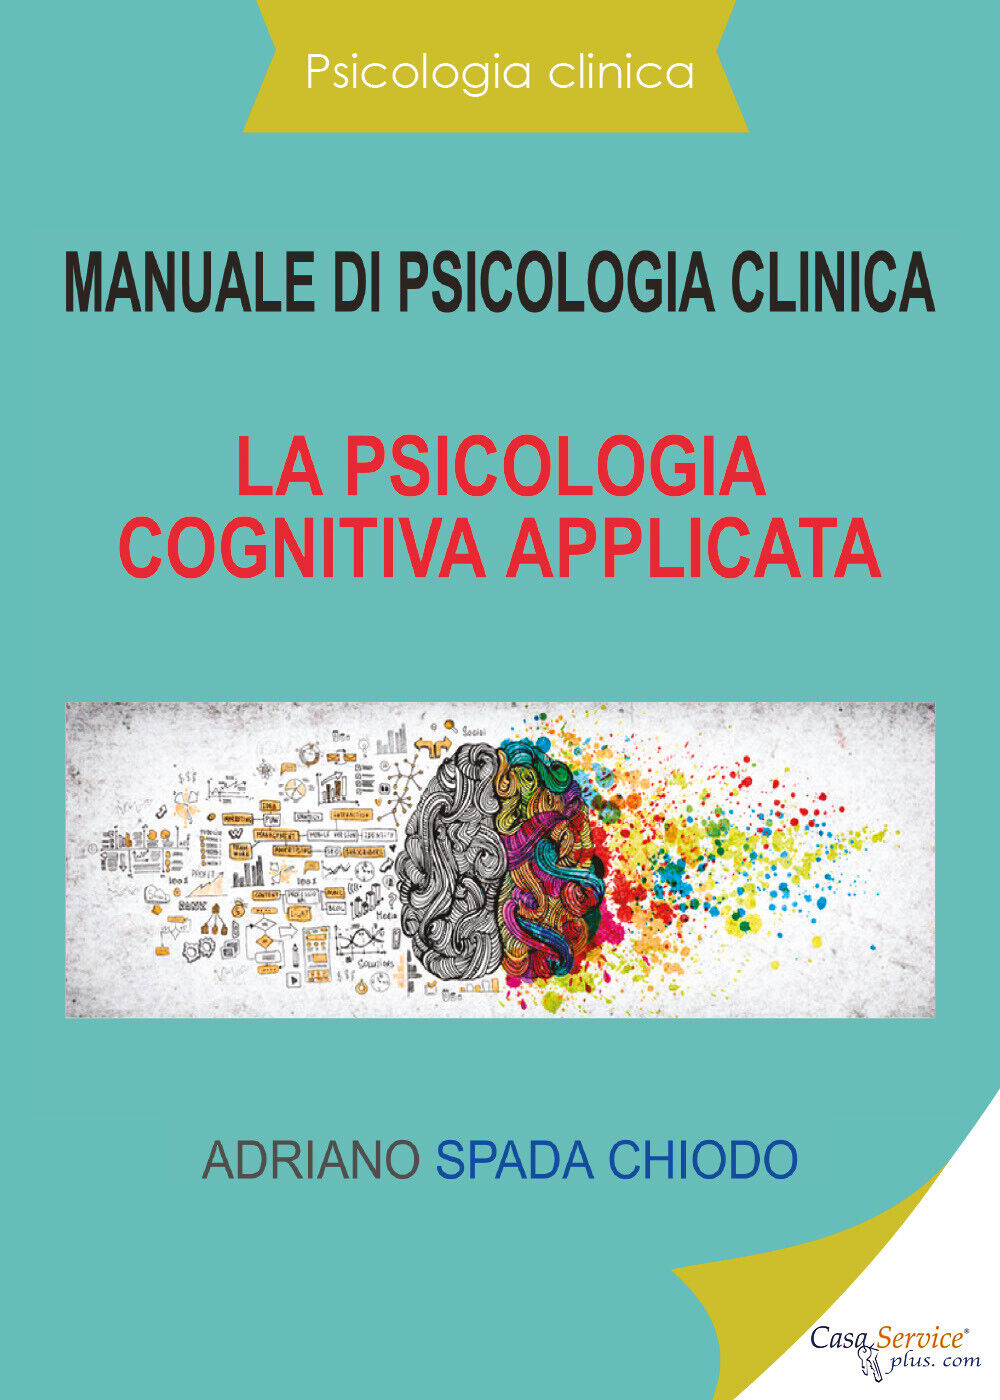 Manuale di psicologia clinica. La psicologia cognitiva applicata di Adriano Spad libro usato